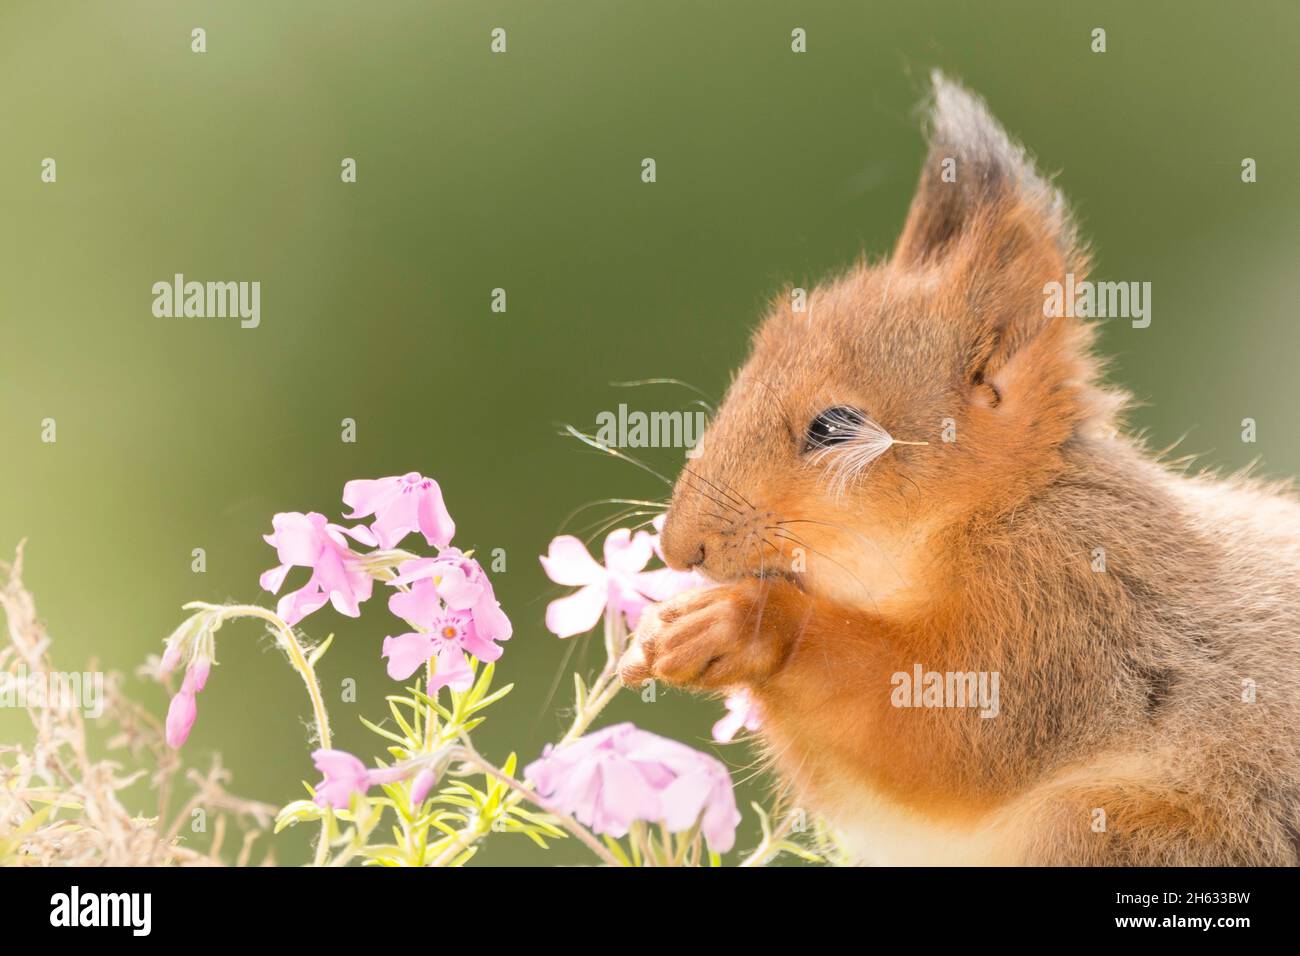 Nahaufnahme eines jungen roten Eichhörnchens, das zwischen den Blüten steht und den Samen in Augennähe hat Stockfoto